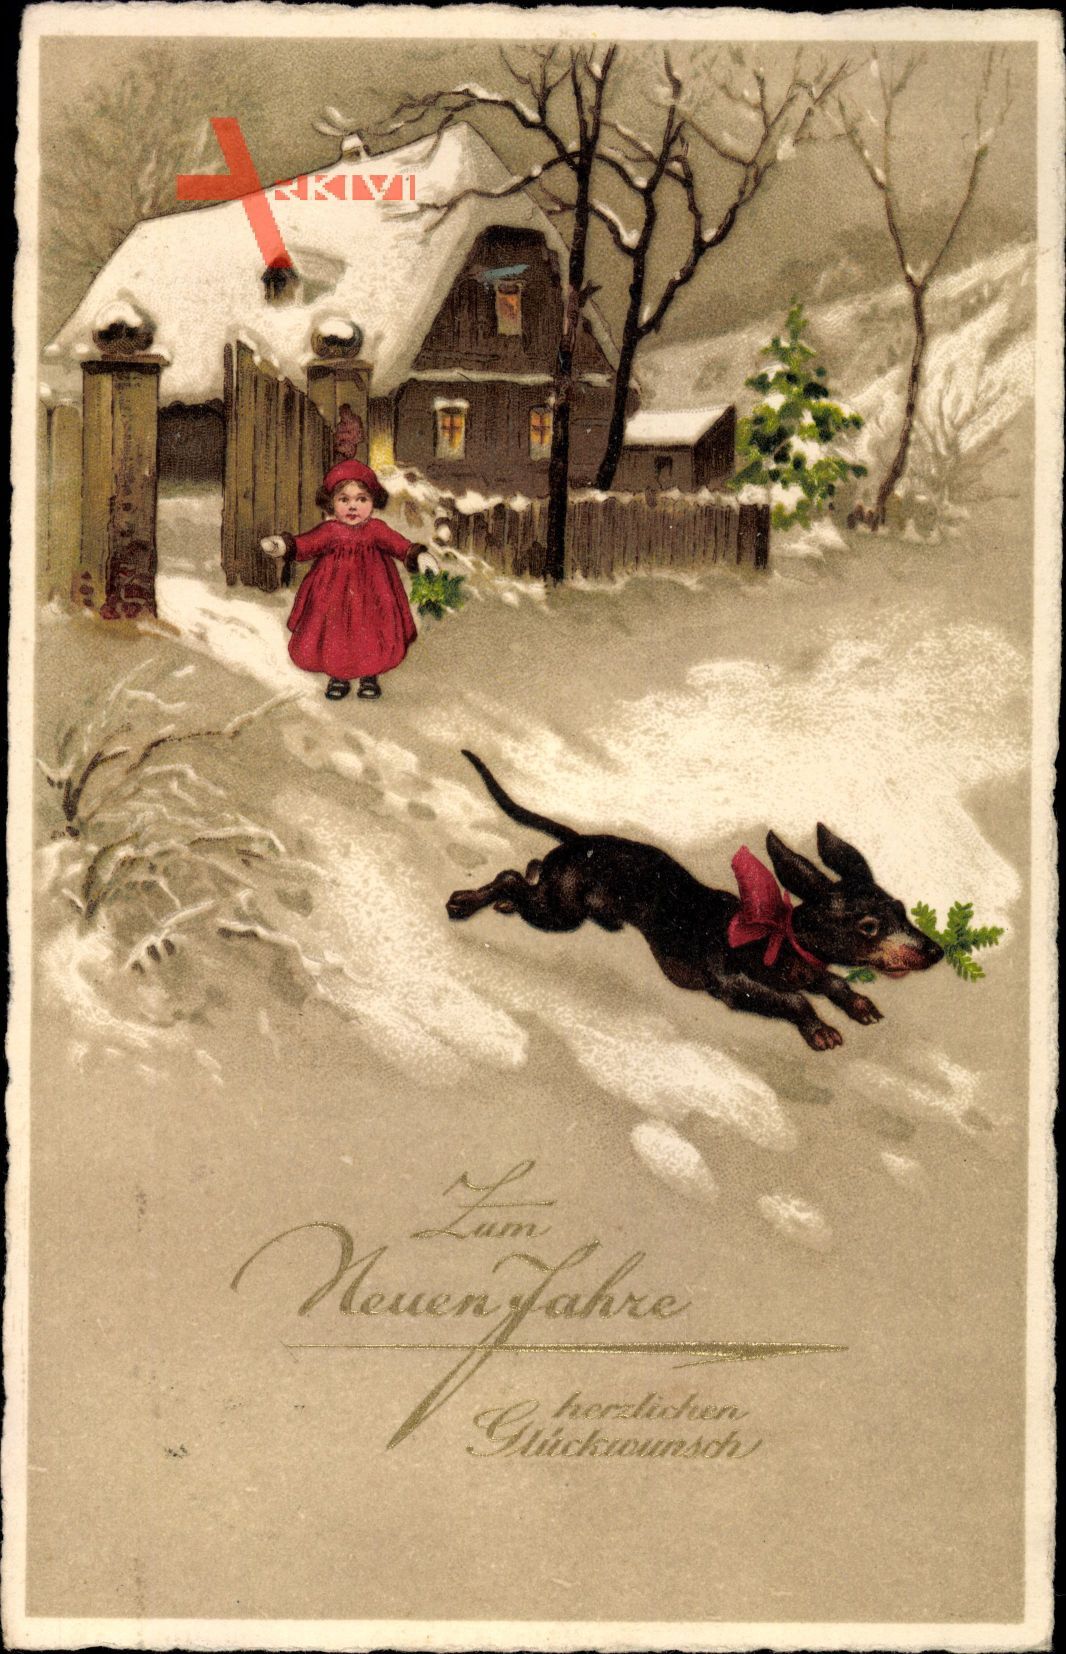 Glückwunsch Neujahr, Dackel mit Tannenzweig, Winter, Haus im Schnee